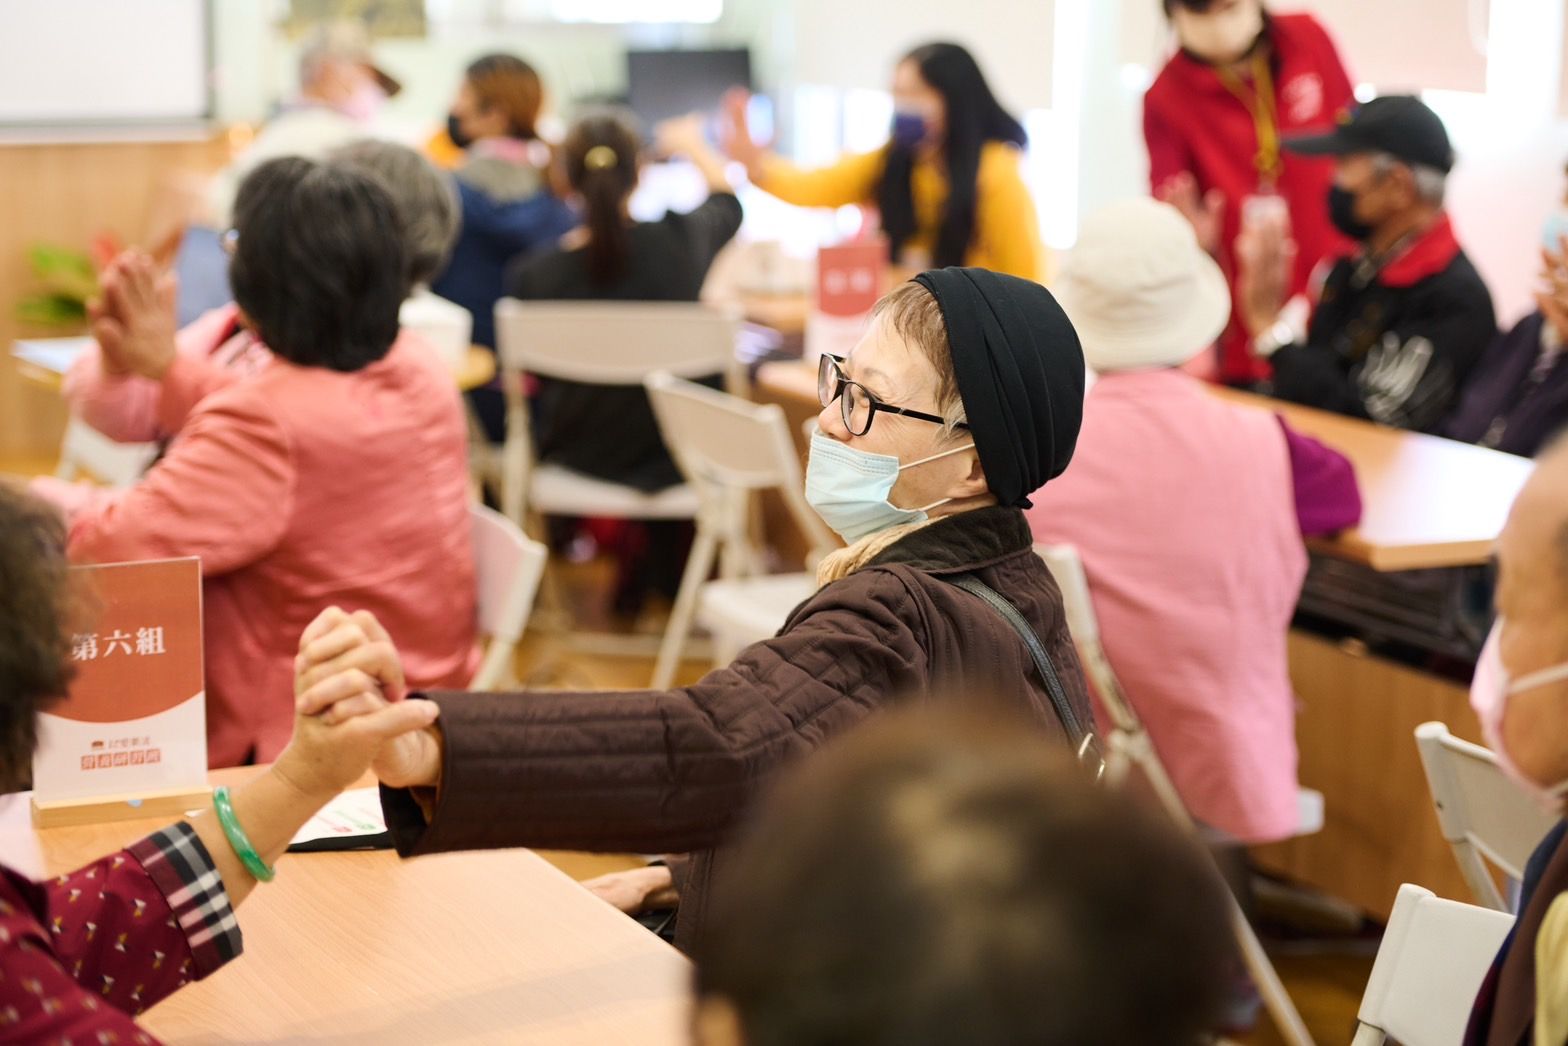 佳格食品集團協助社福單位實踐「老老照顧」，減輕社會照顧負擔